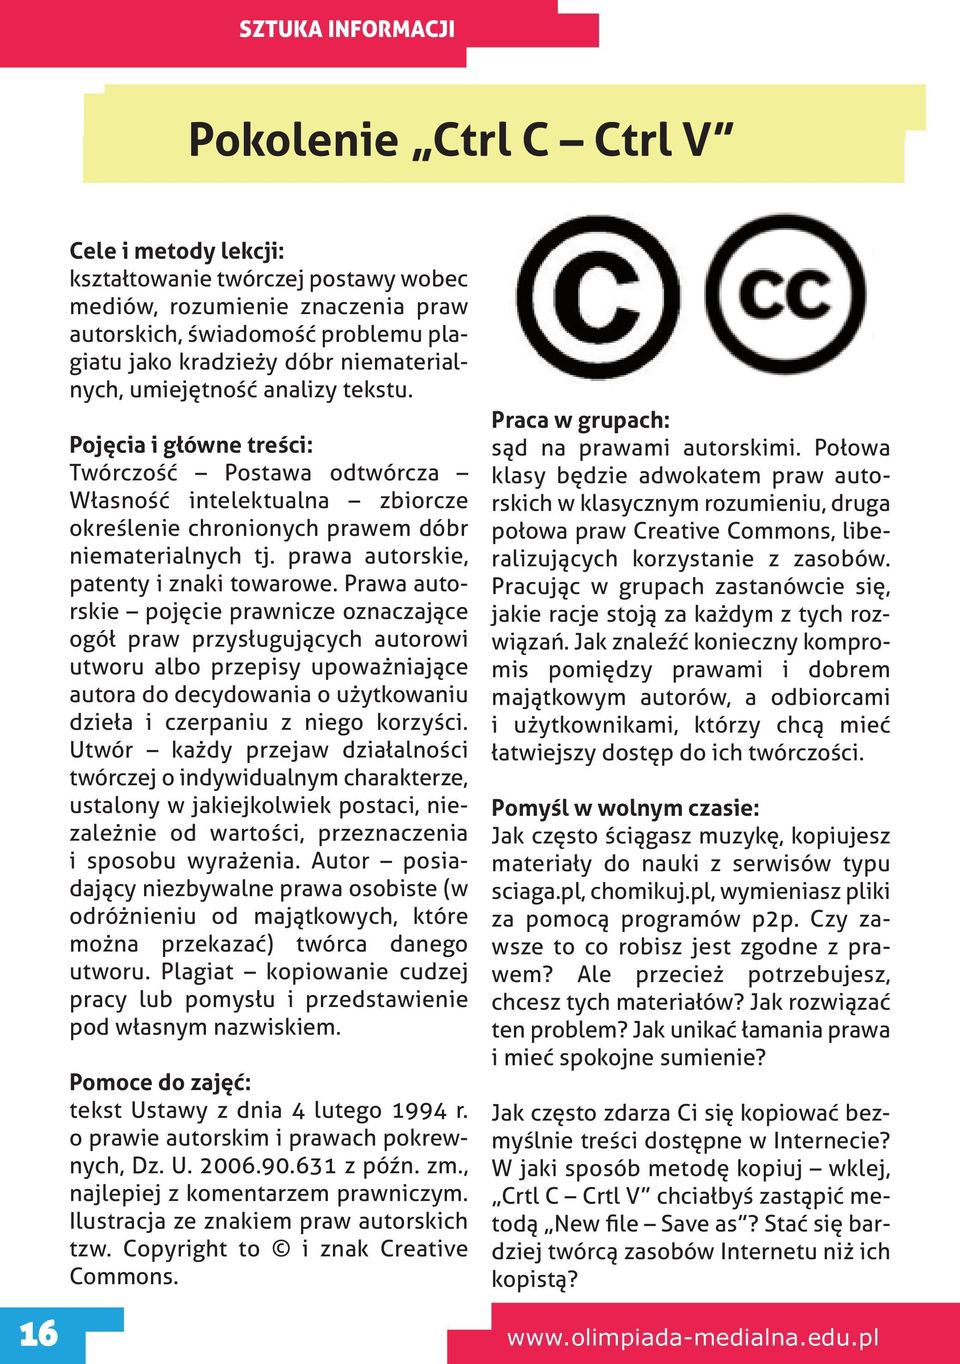 prawa autorskie, patenty i znaki towarowe.